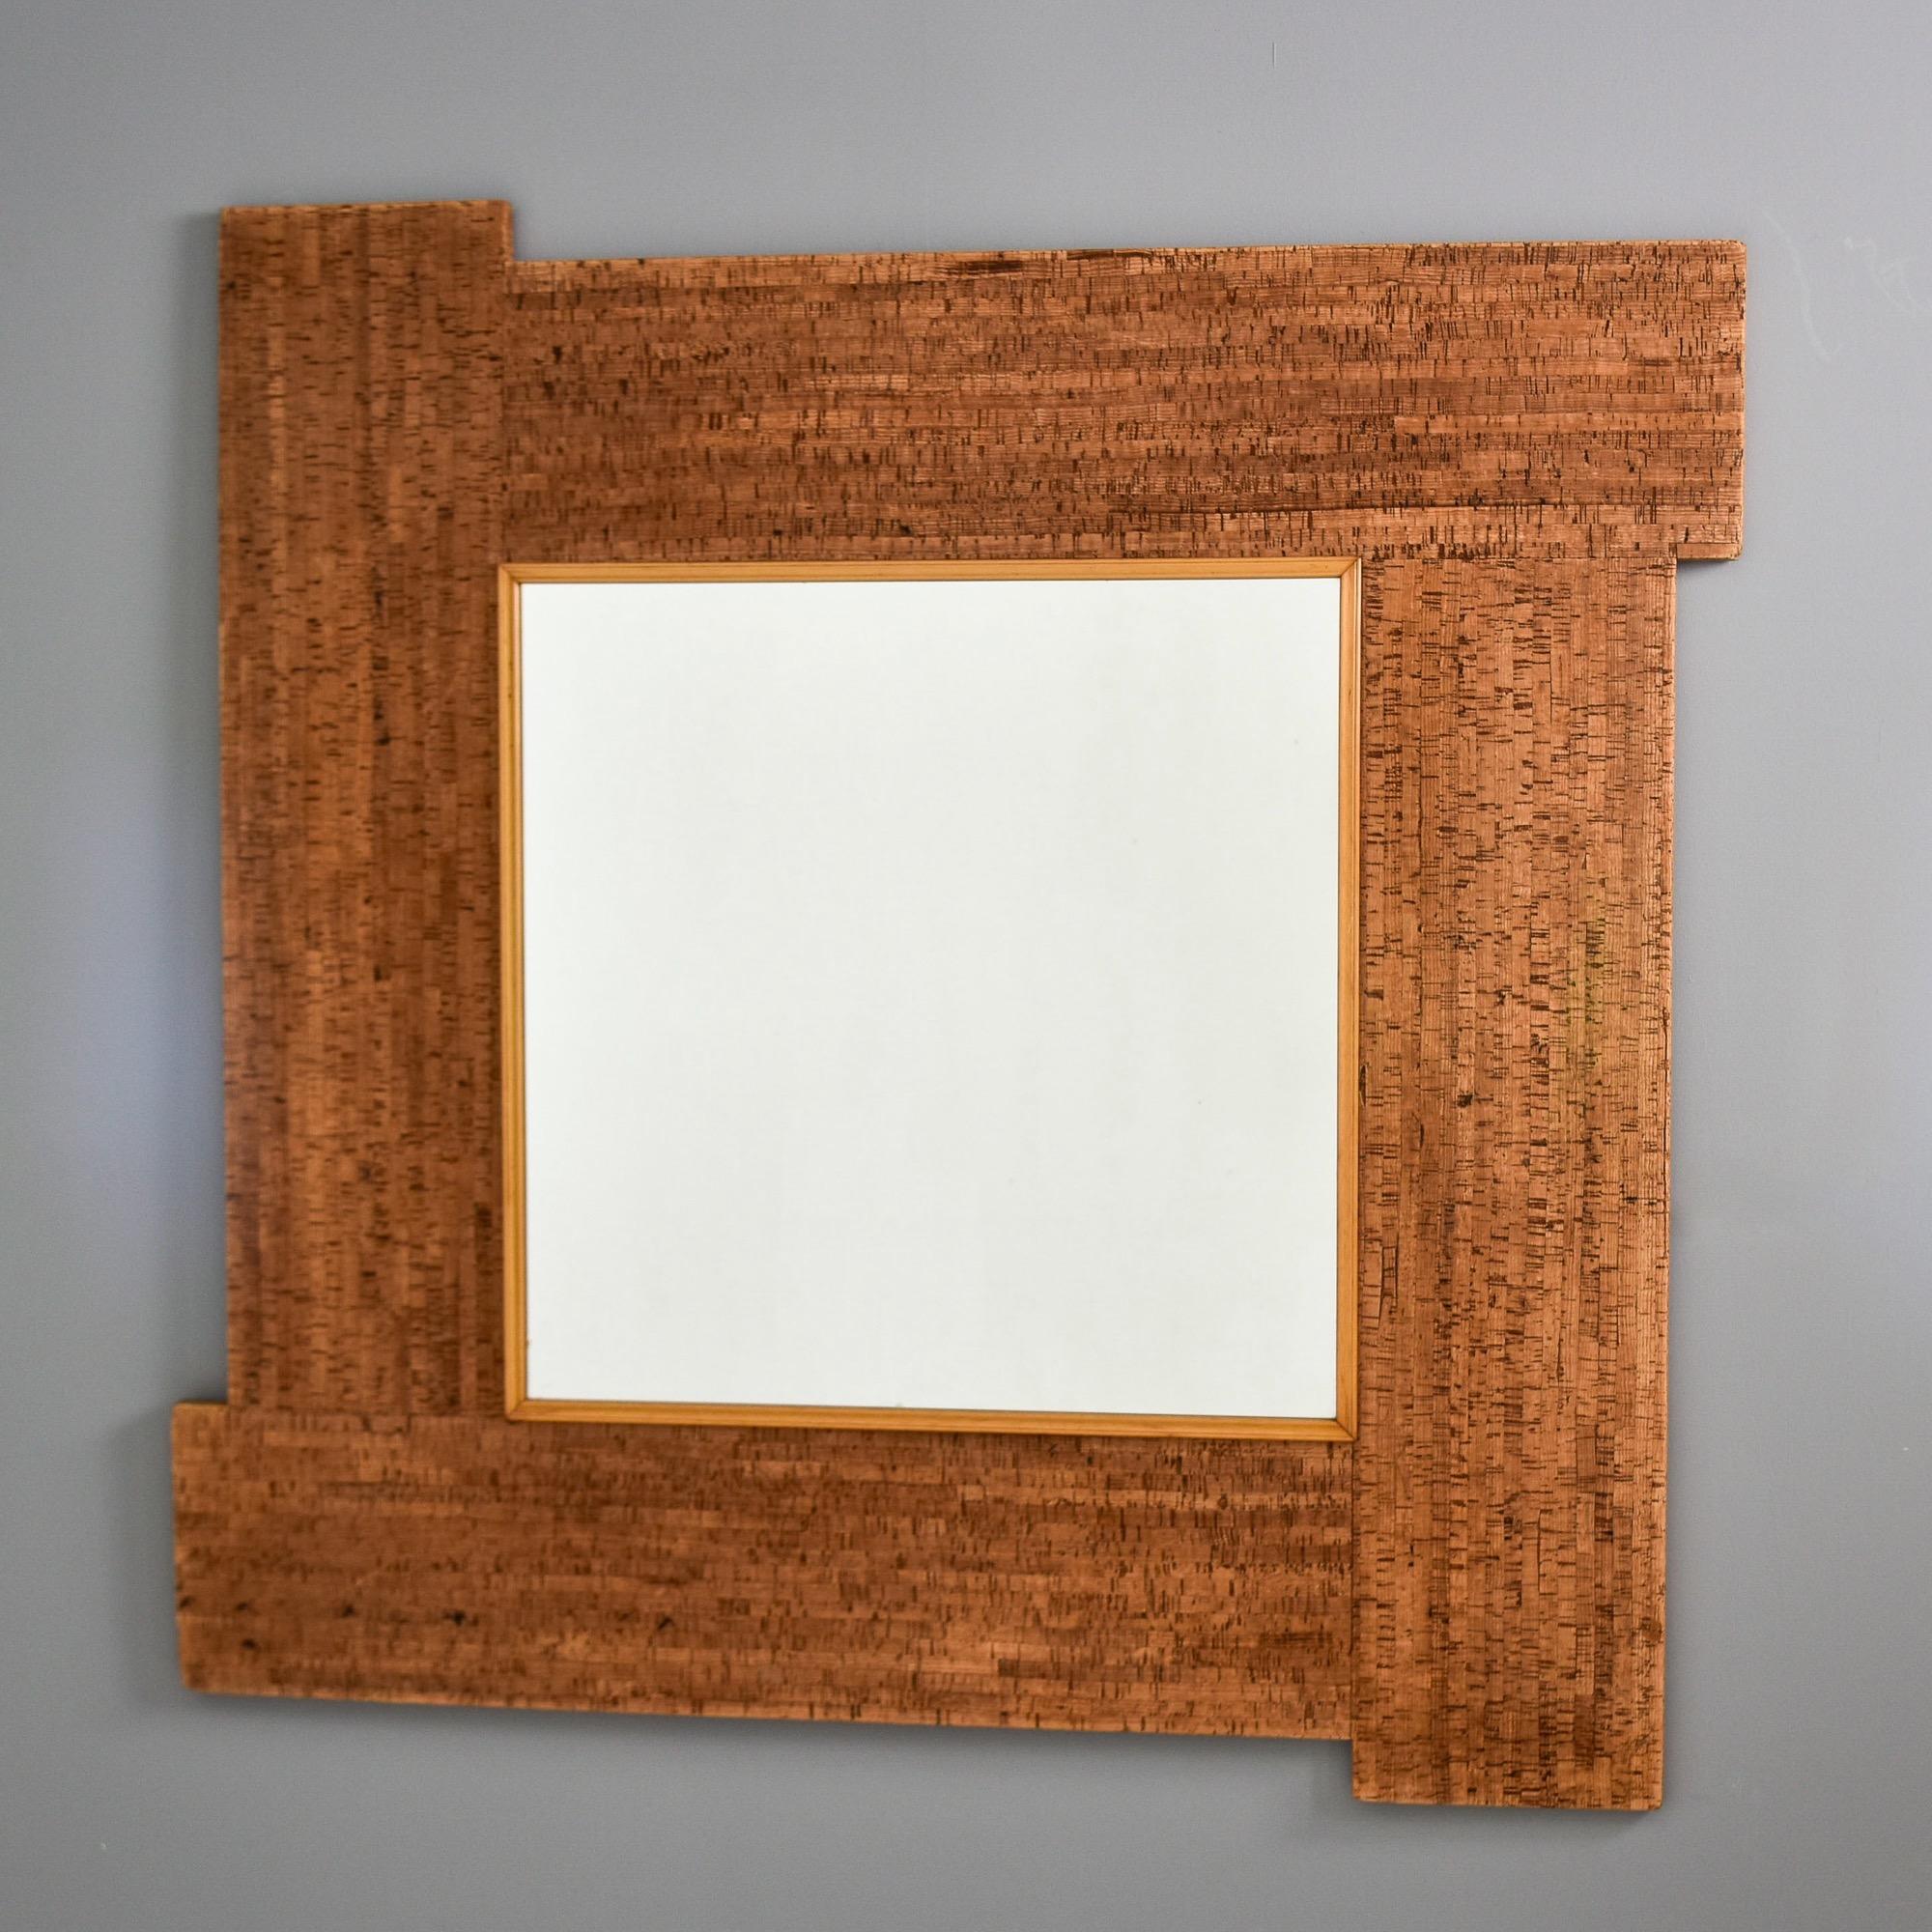 Dieser große, quadratische Spiegel mit Korkrahmen wurde in Italien gefunden und stammt aus den 1970er Jahren. Der kühne und modisch gestaltete quadratische Wandspiegel misst etwas mehr als einen Meter im Quadrat. Unbekannter Hersteller.